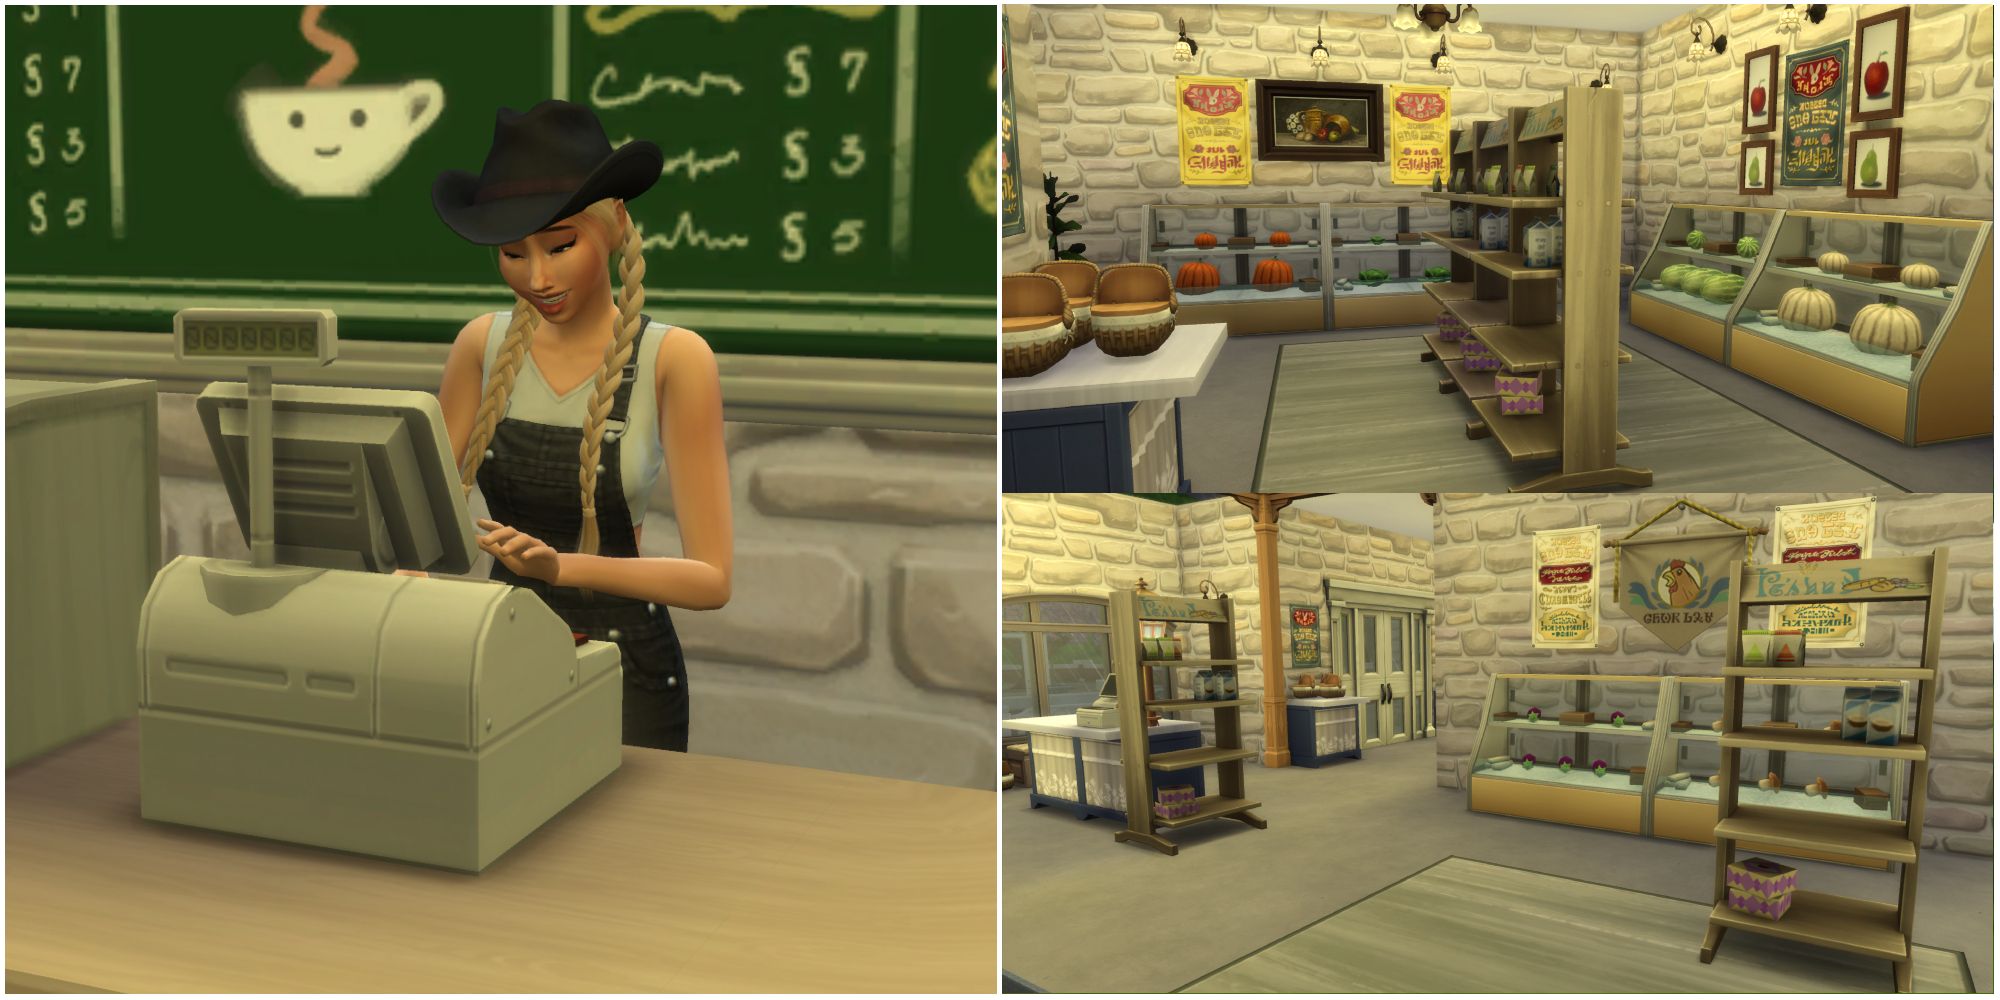 The Sim for the Bloomful Challenge открывает собственный продуктовый магазин для продажи продуктов благодаря расширению The Sims 4 Get To Work.